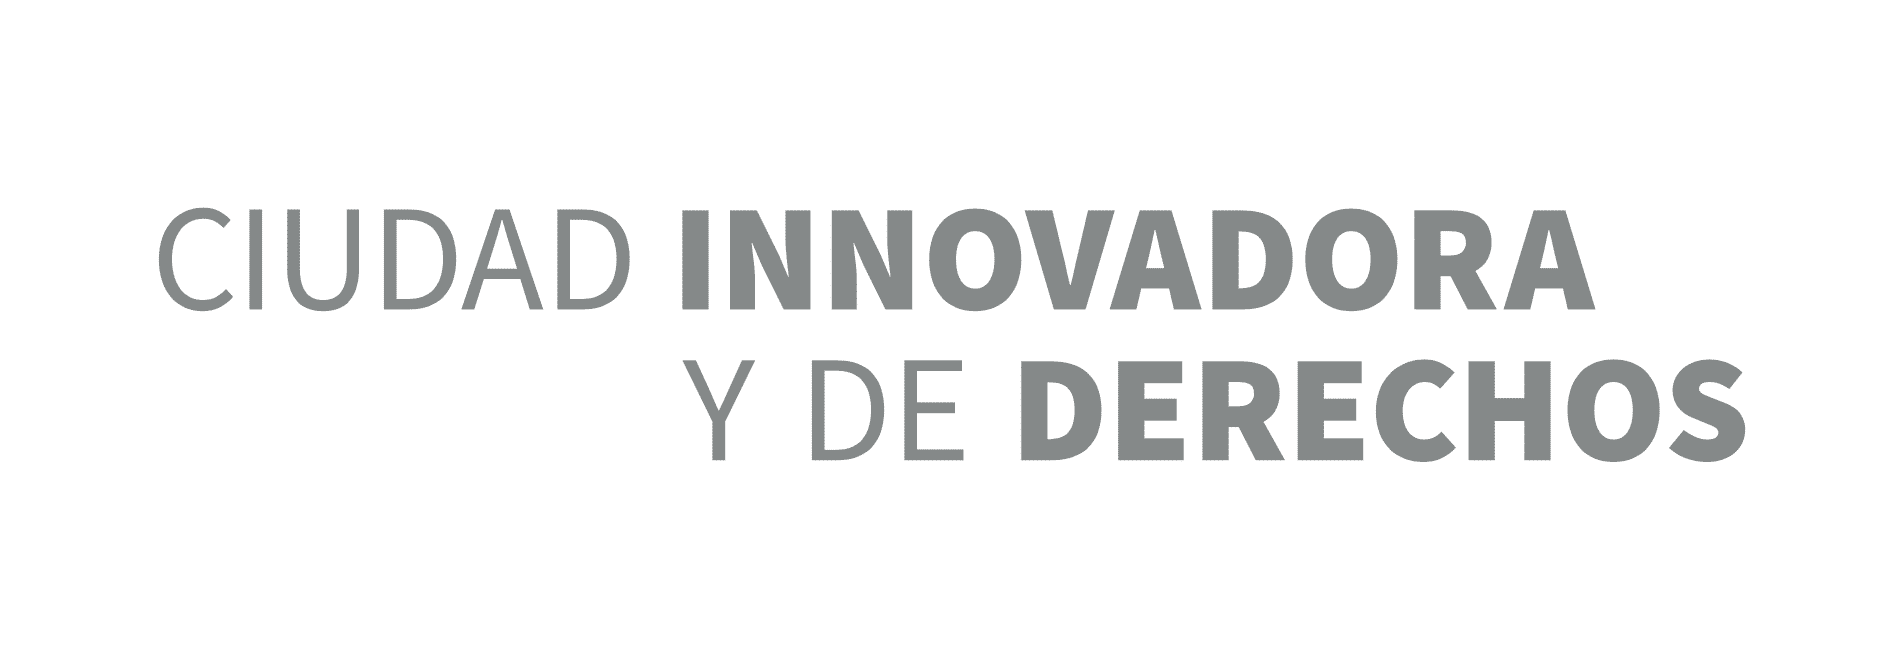 slogan cdmx 2018 - 2024 ciudad innovadora y de derechos